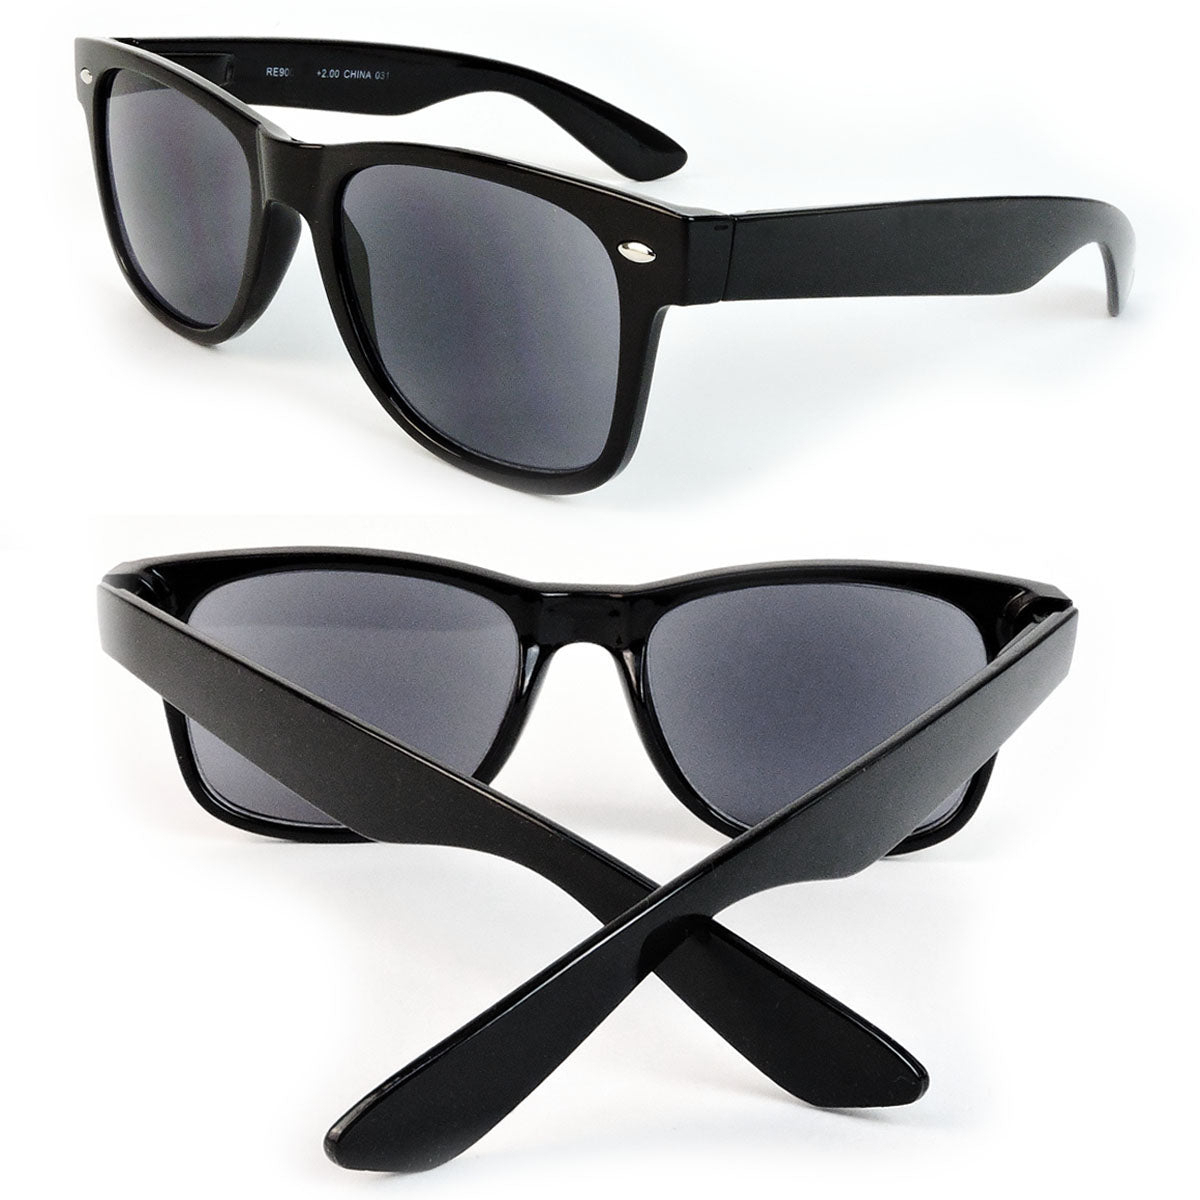 Sun Readers Full Lens Classic Frame 80's Retro Style Reading Sunglasses - Black, +2.25